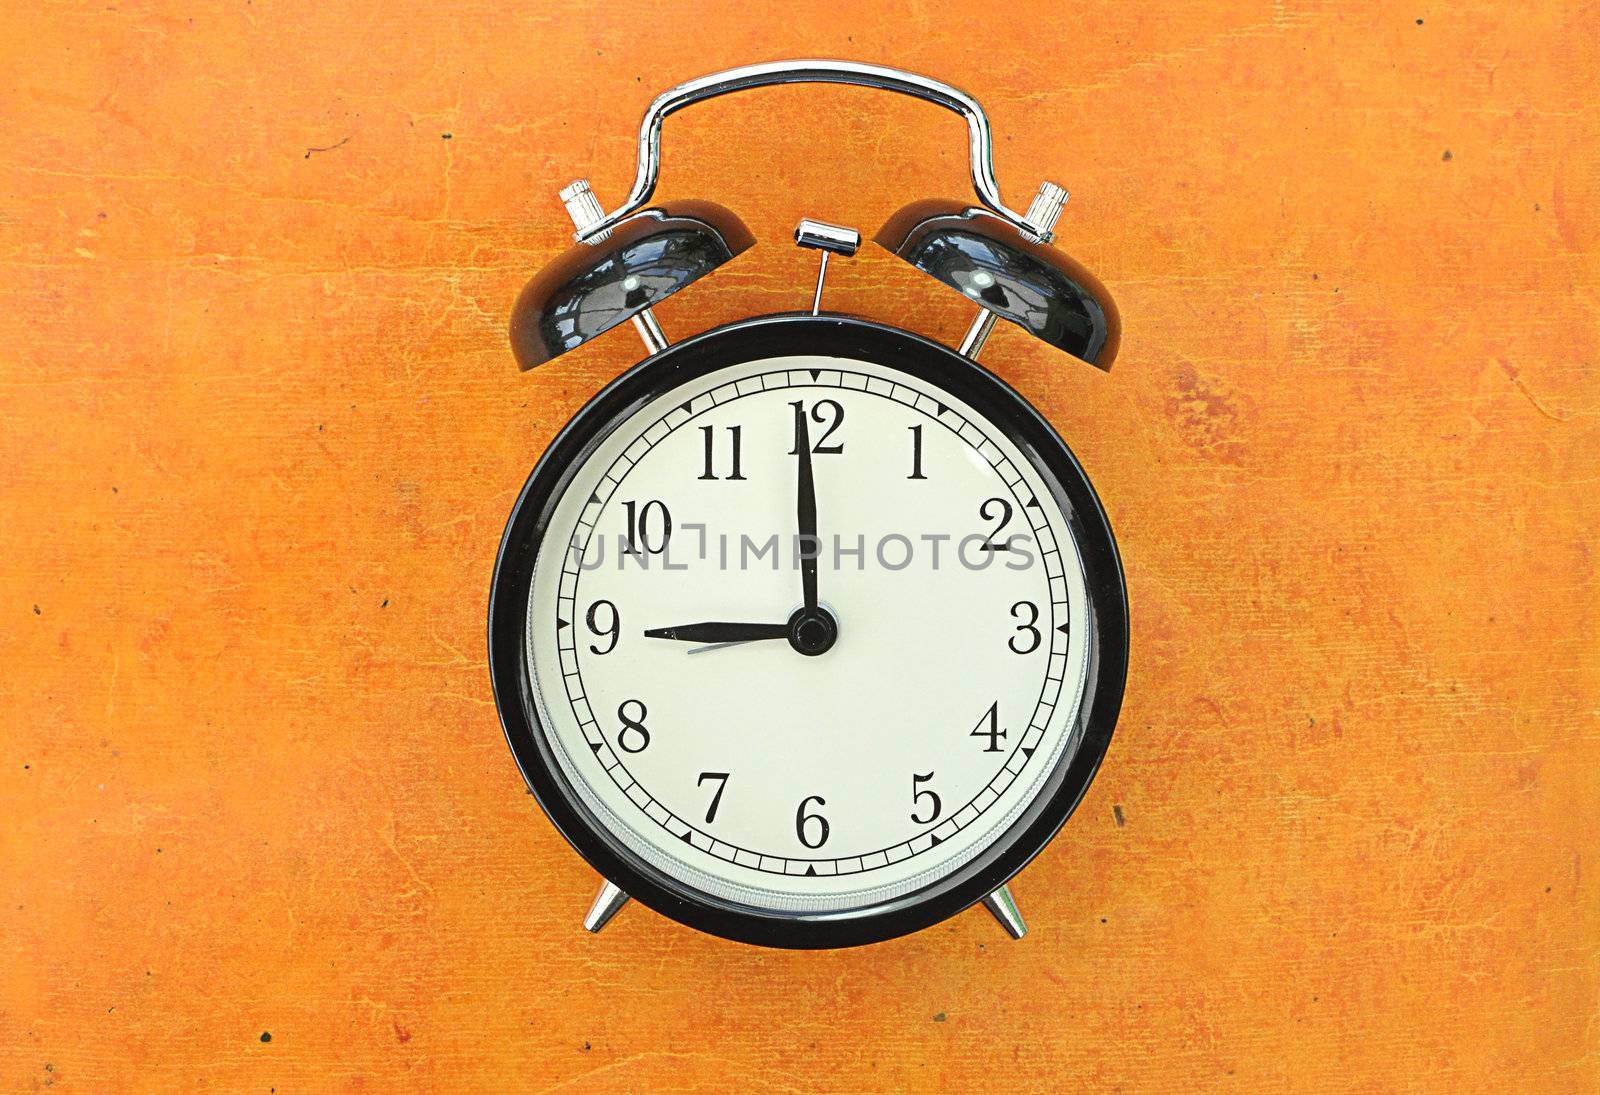 Closeup of an old vintage alarm clock face at 9 o'clock